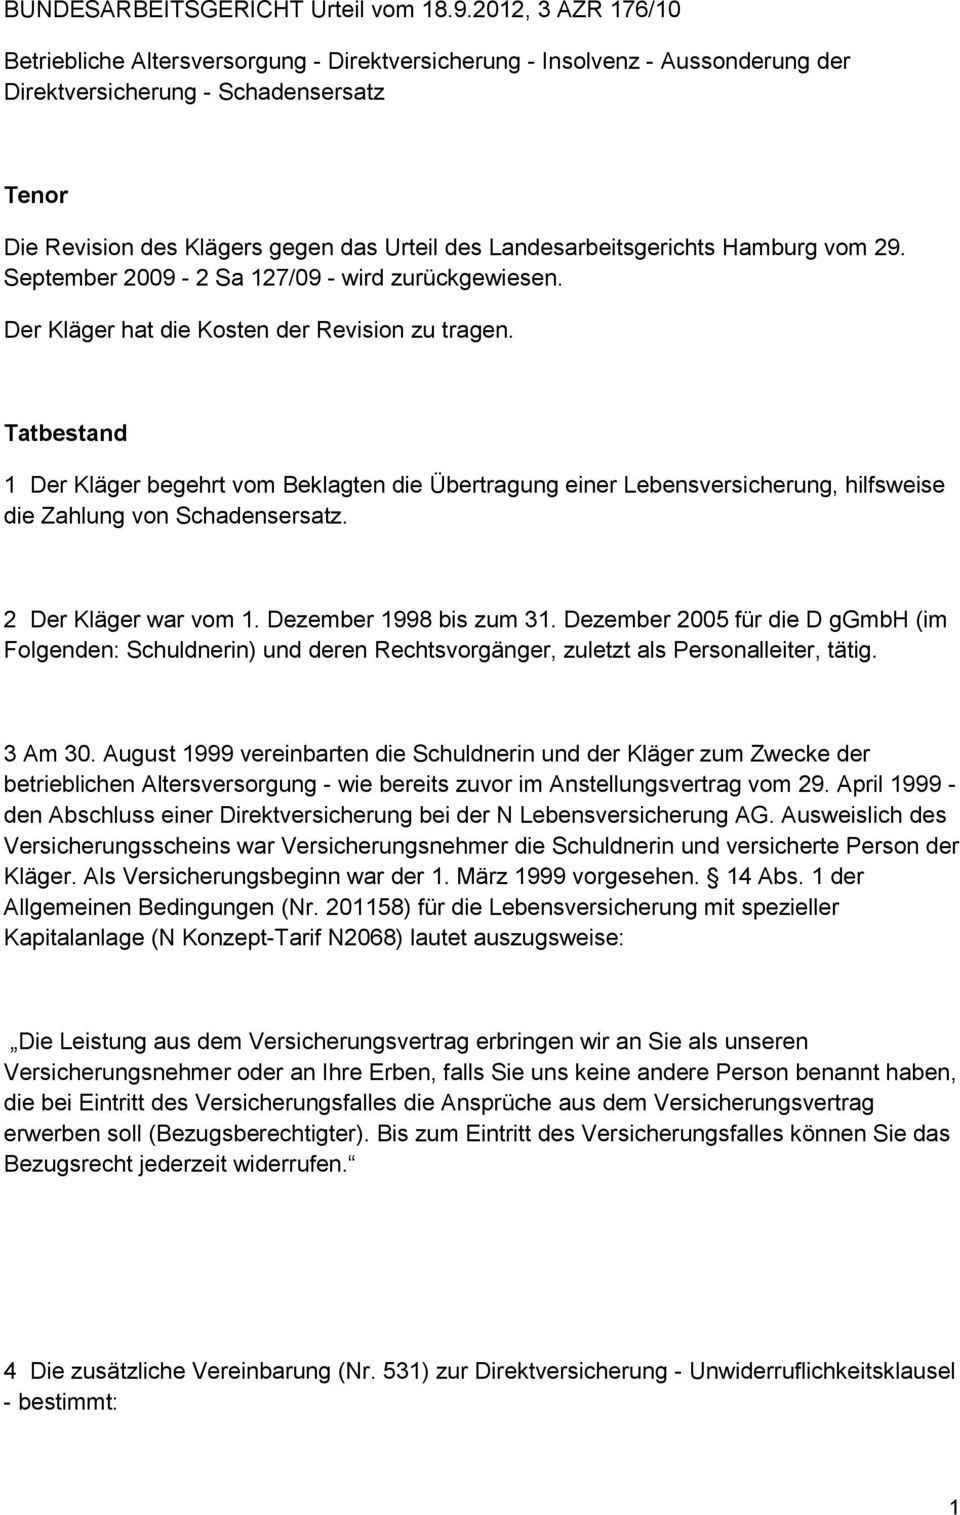 Landesarbeitsgerichts Hamburg vom 29. September 2009-2 Sa 127/09 - wird zurückgewiesen. Der Kläger hat die Kosten der Revision zu tragen.